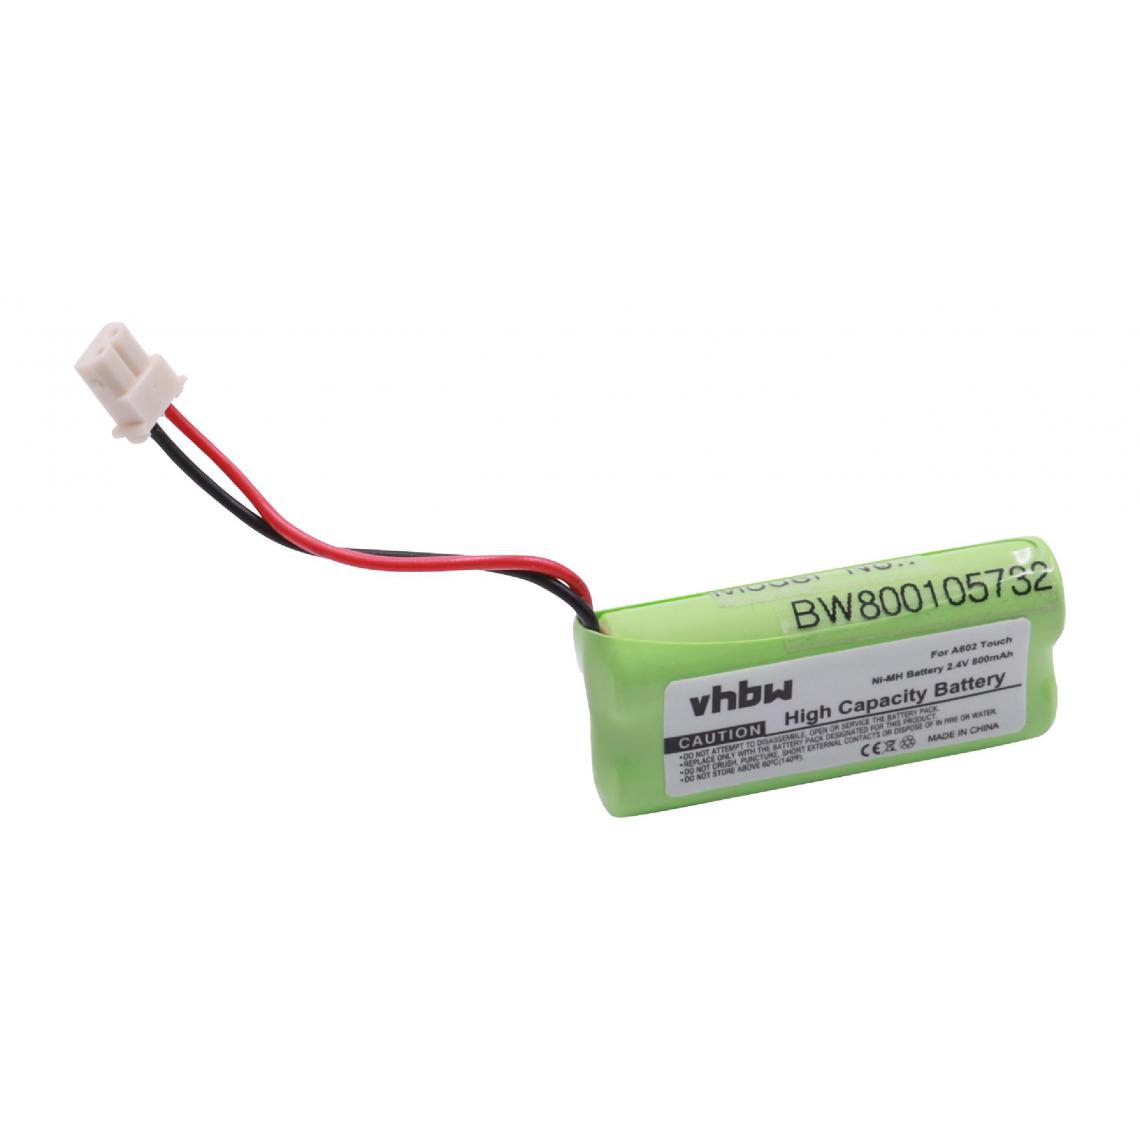 Vhbw - vhbw Batterie compatible avec V-Tech DS652232, DS6522-32, DS65224, DS6522-4, DS6601 téléphone fixe sans fil (800mAh, 2,4V, NiMH) - Batterie téléphone